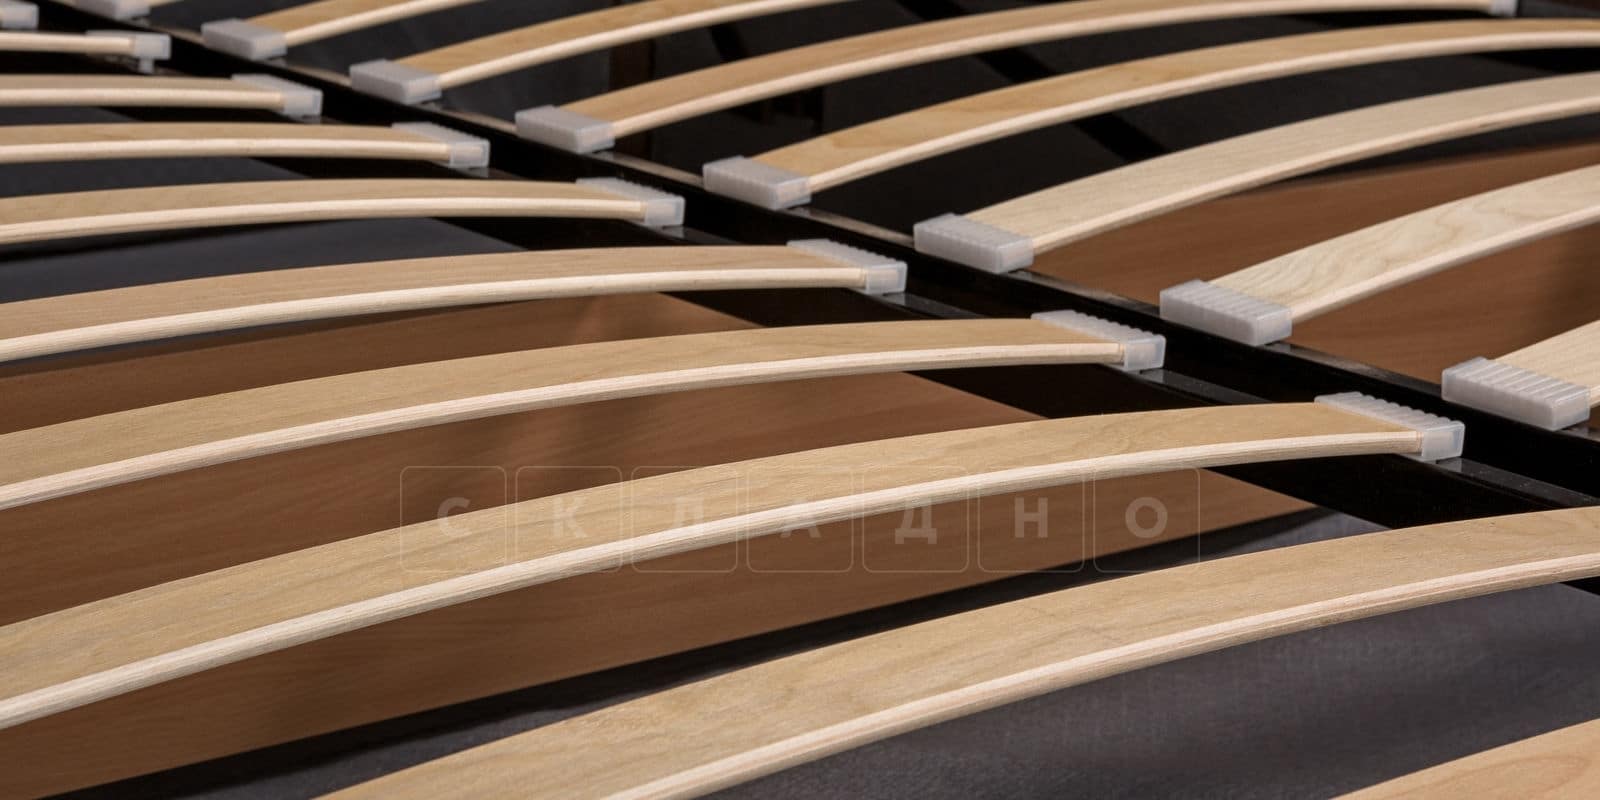 Мягкая кровать Афина 160 см рогожка коричневого цвета фото 7 | интернет-магазин Складно